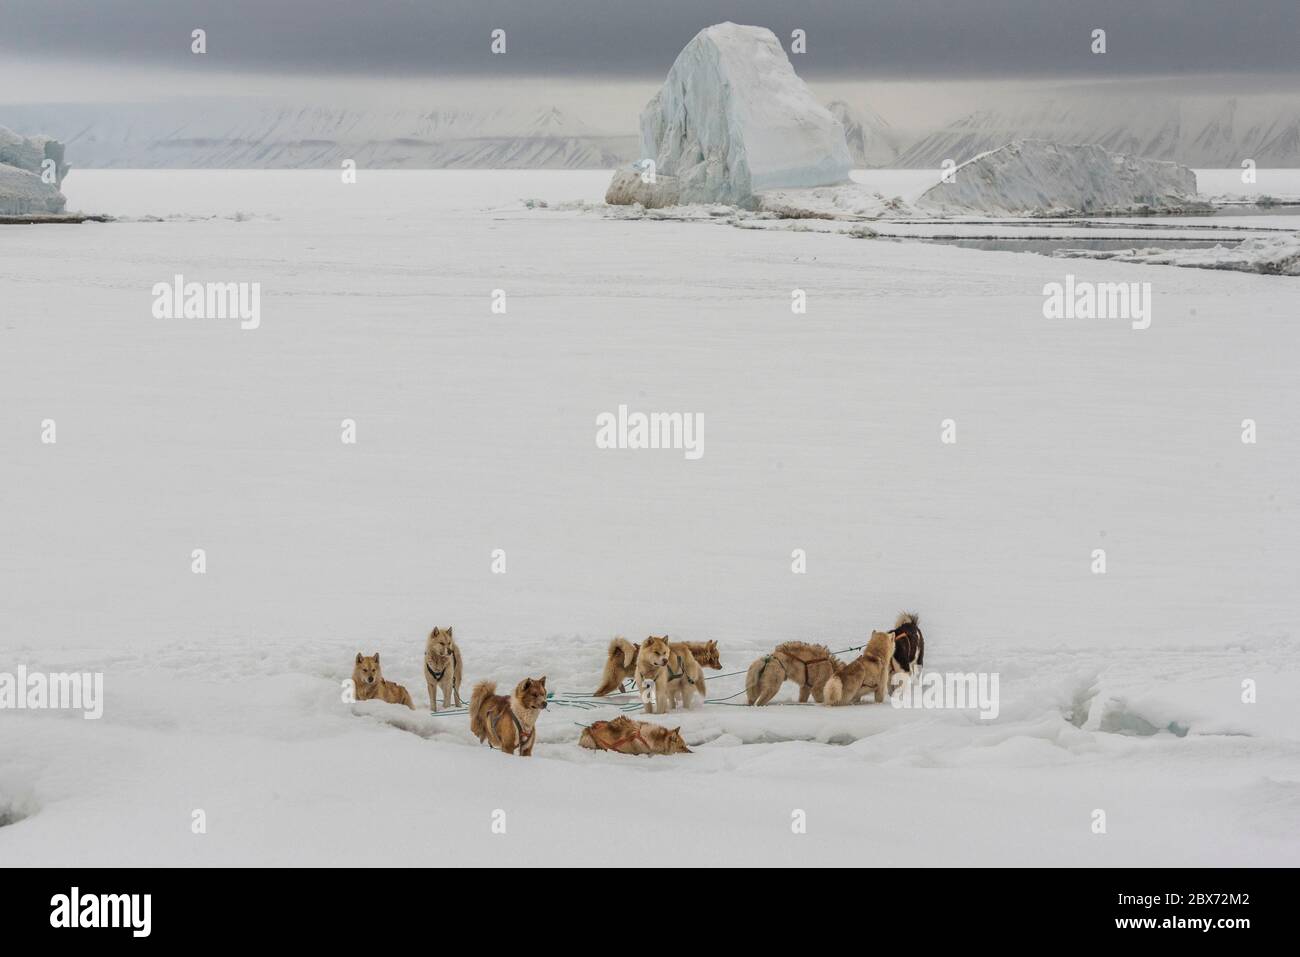 Das Hundegespann wartet auf die Rückkehr des Jägers. Die Hunde sind an der Eiskante abseits des Schlittens festgemacht Stock Photo